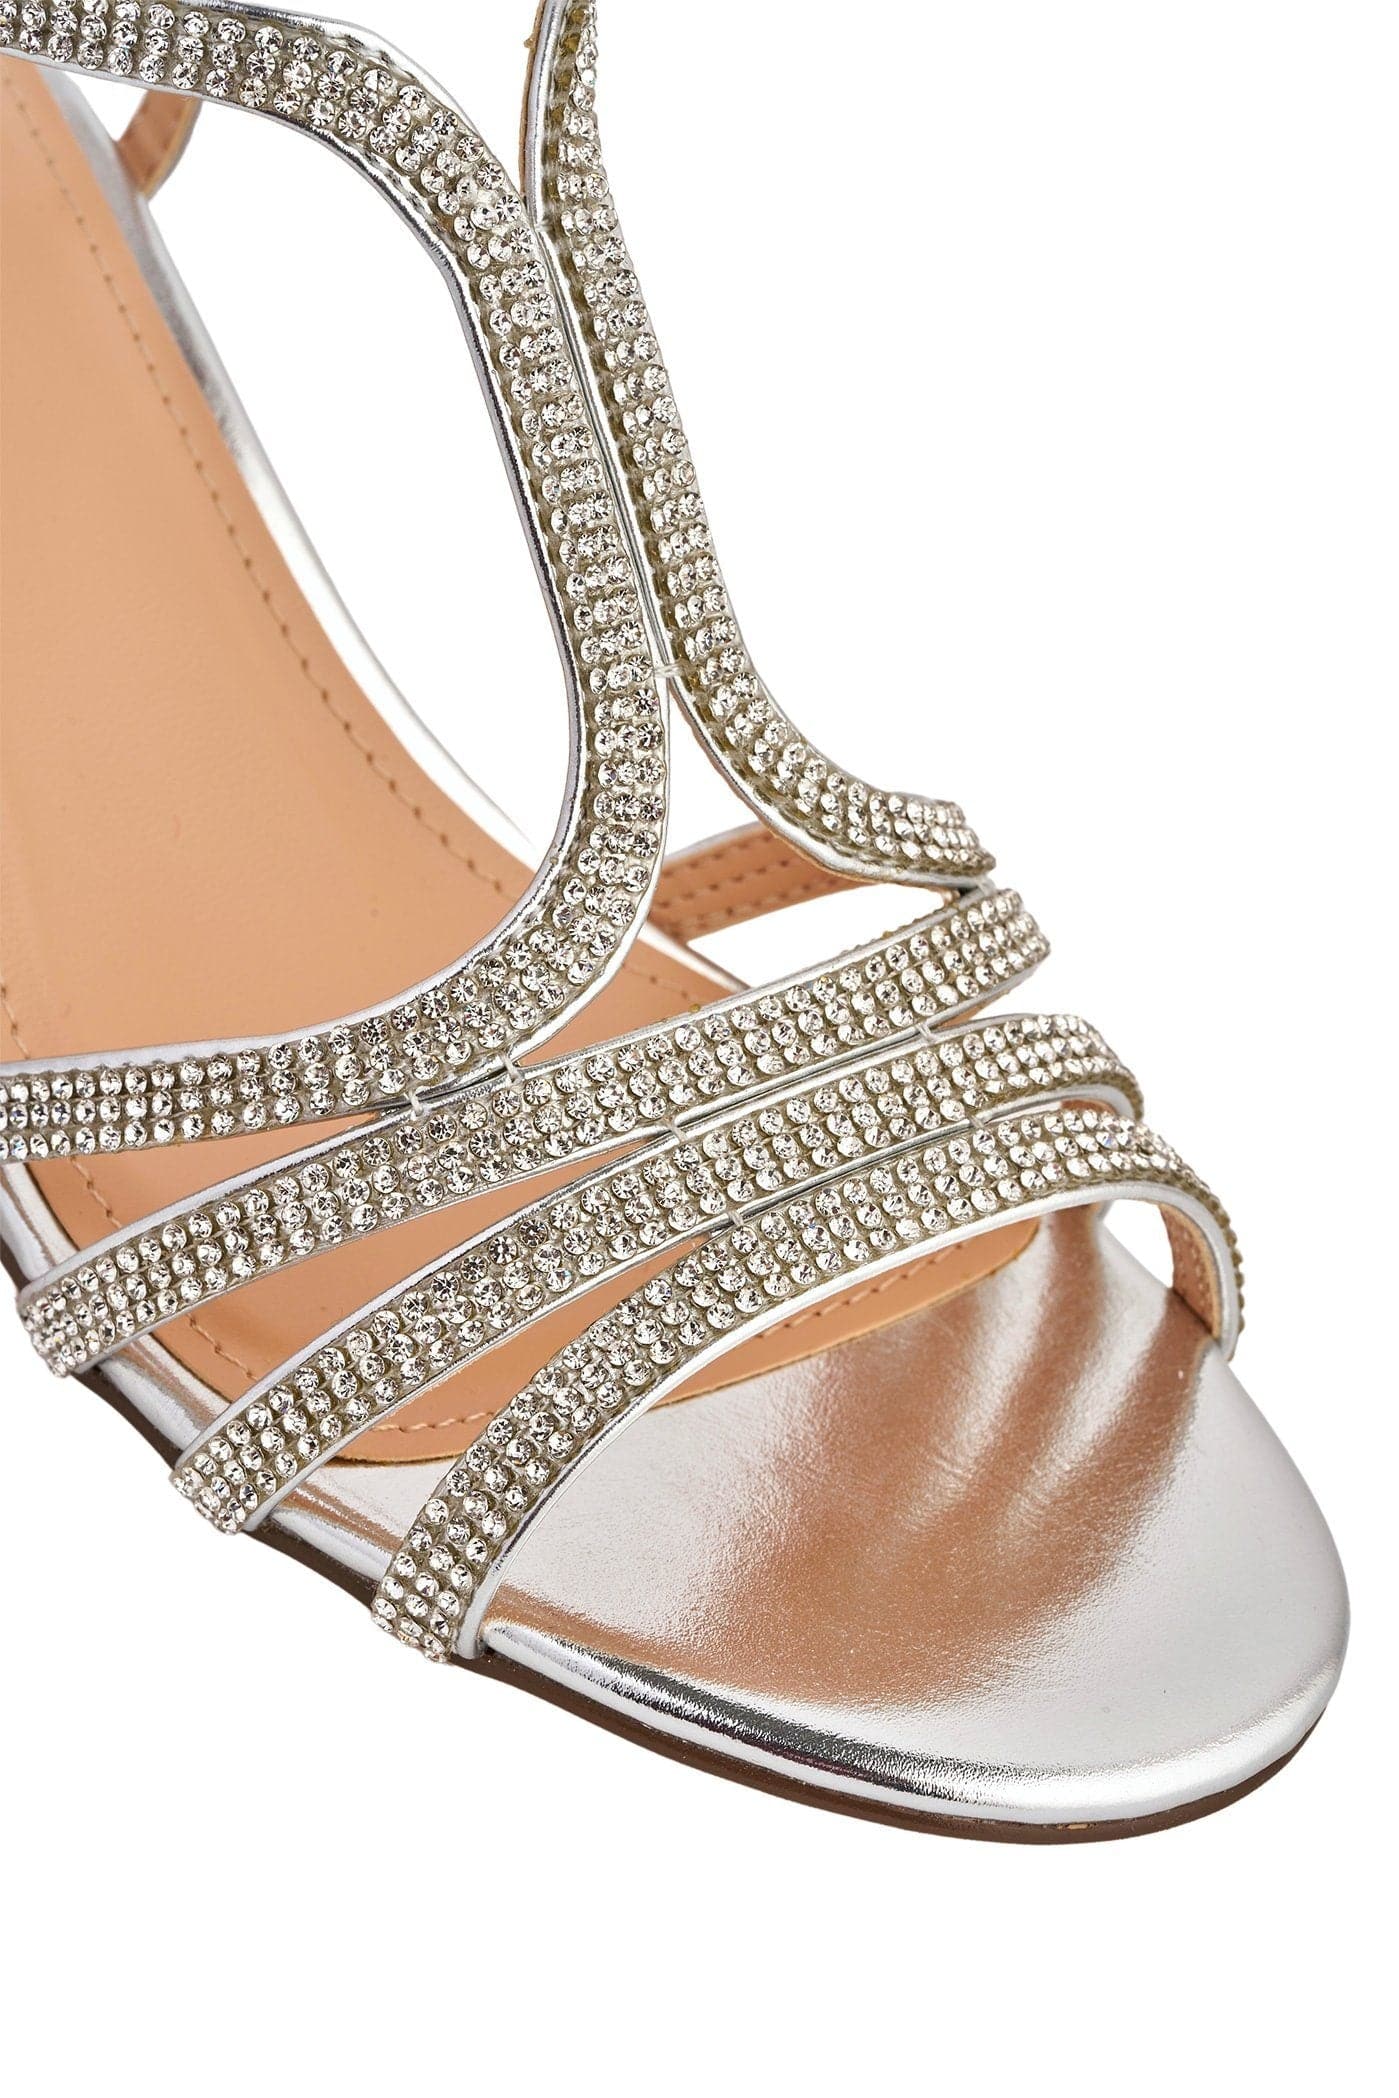 Miss Diva Amanda 3 Diamante Strap T-bar Block Heel Sandal in Silver